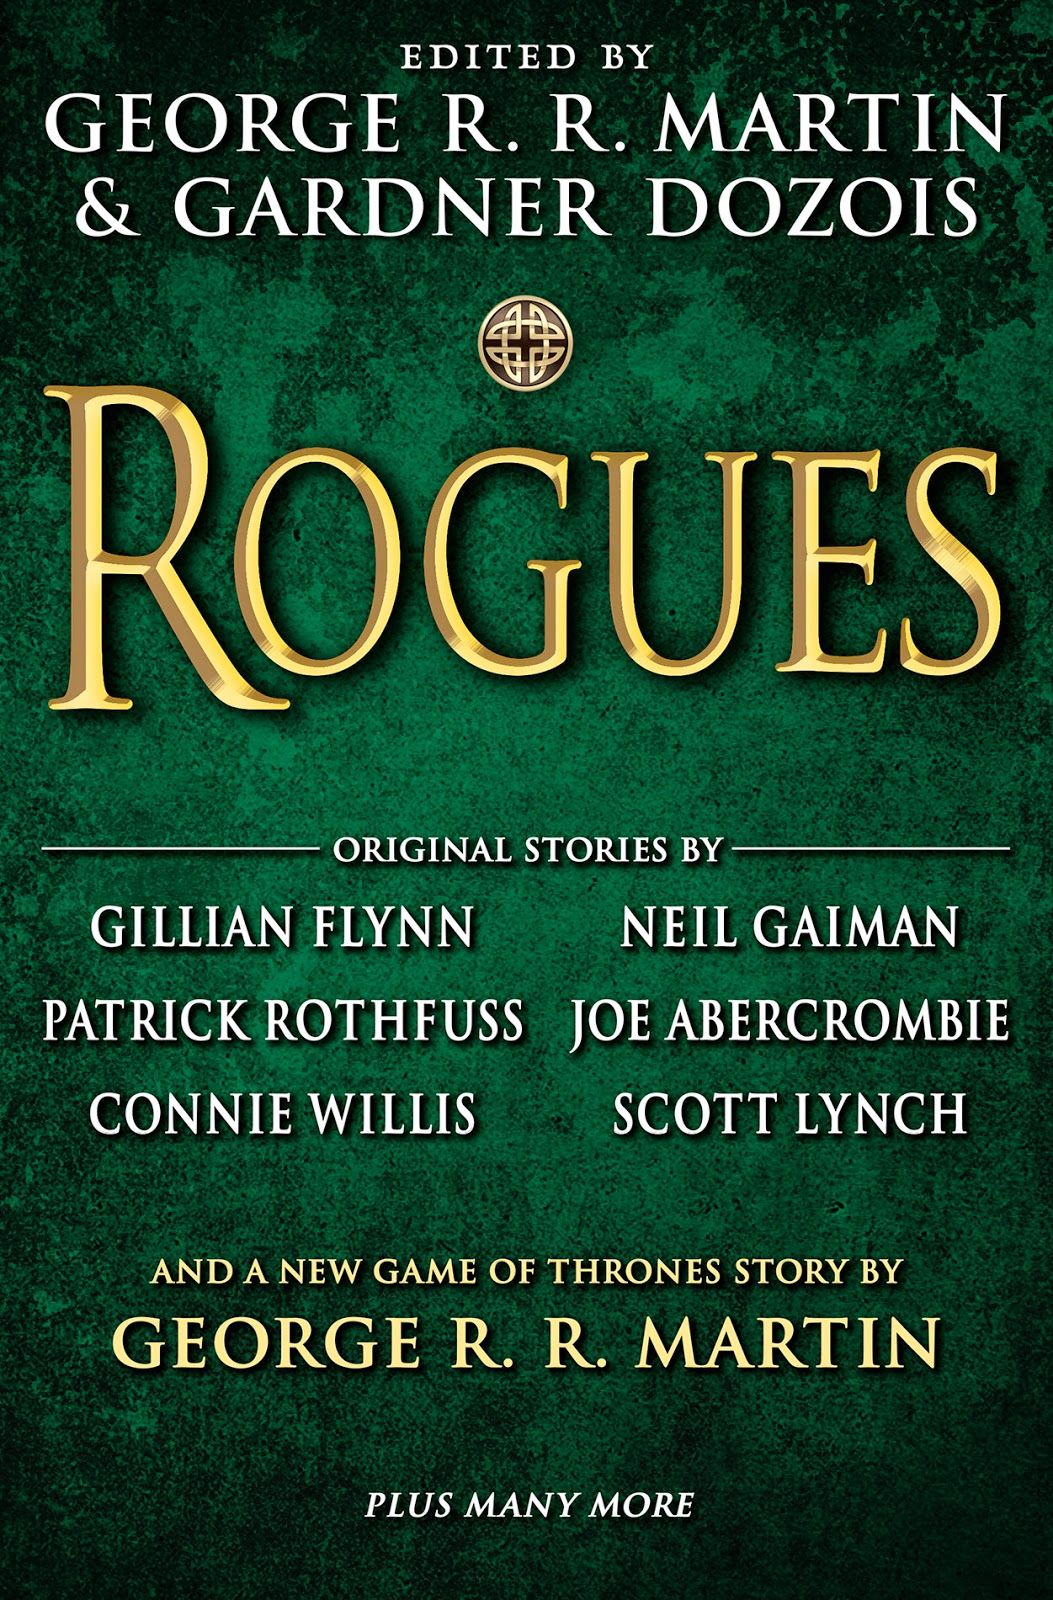 Livre d'anthologie Rogues édité par George R. R. Martin et Gardner Dozois.